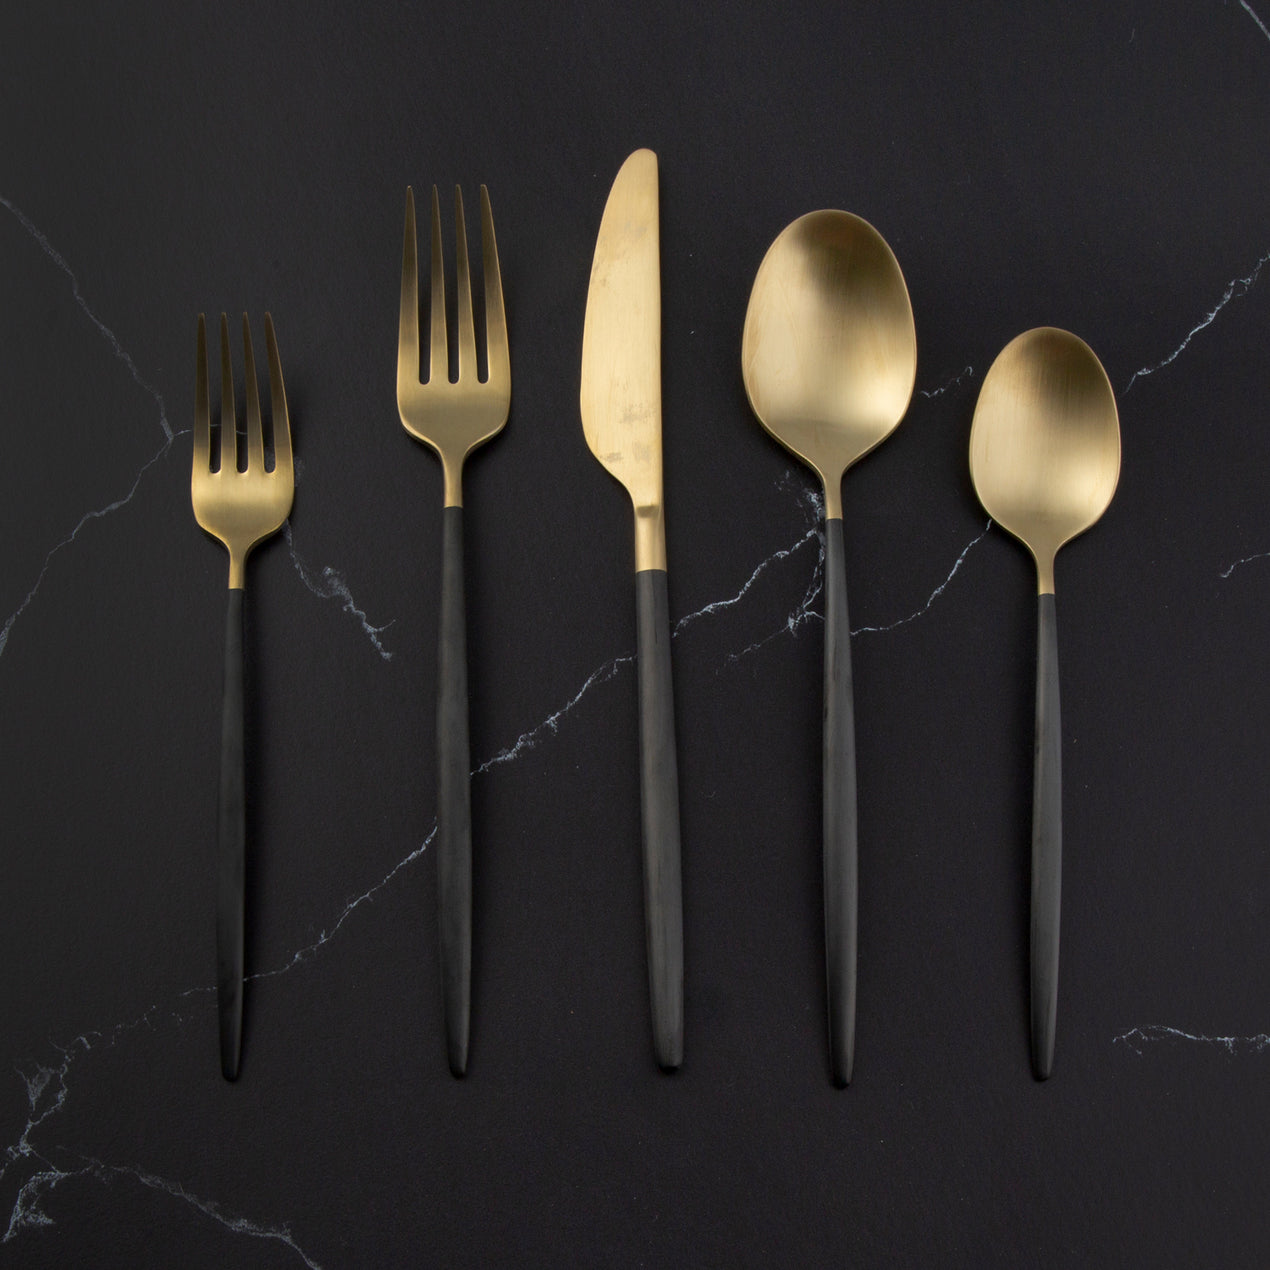 flatware set in brushed gold & black | parker + gibbs